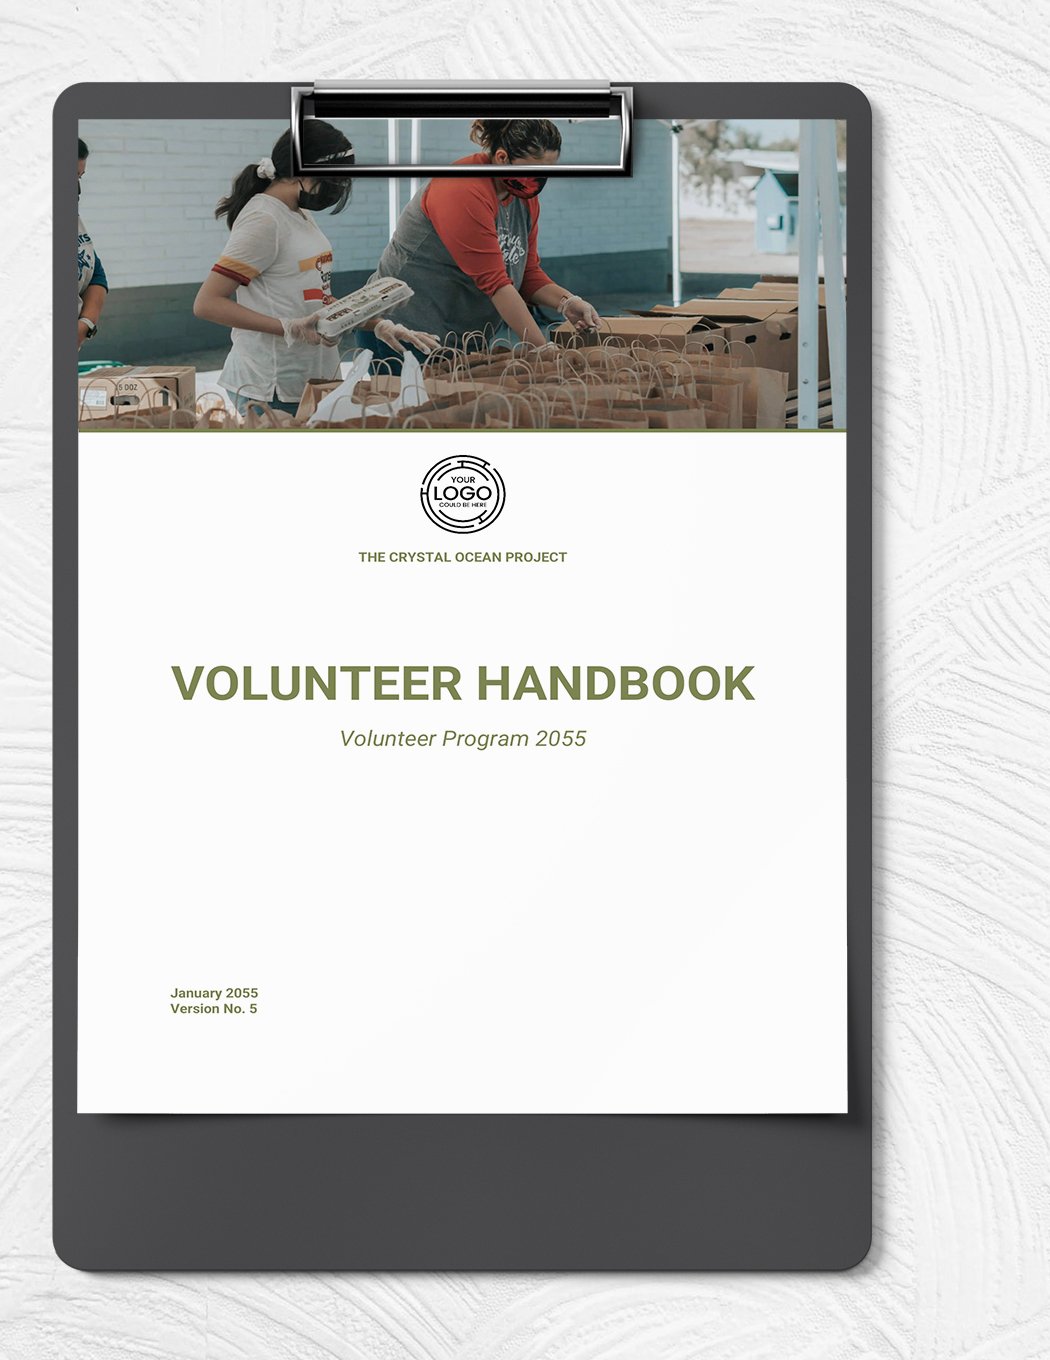 Volunteer Handbook Template in Word, Google Docs